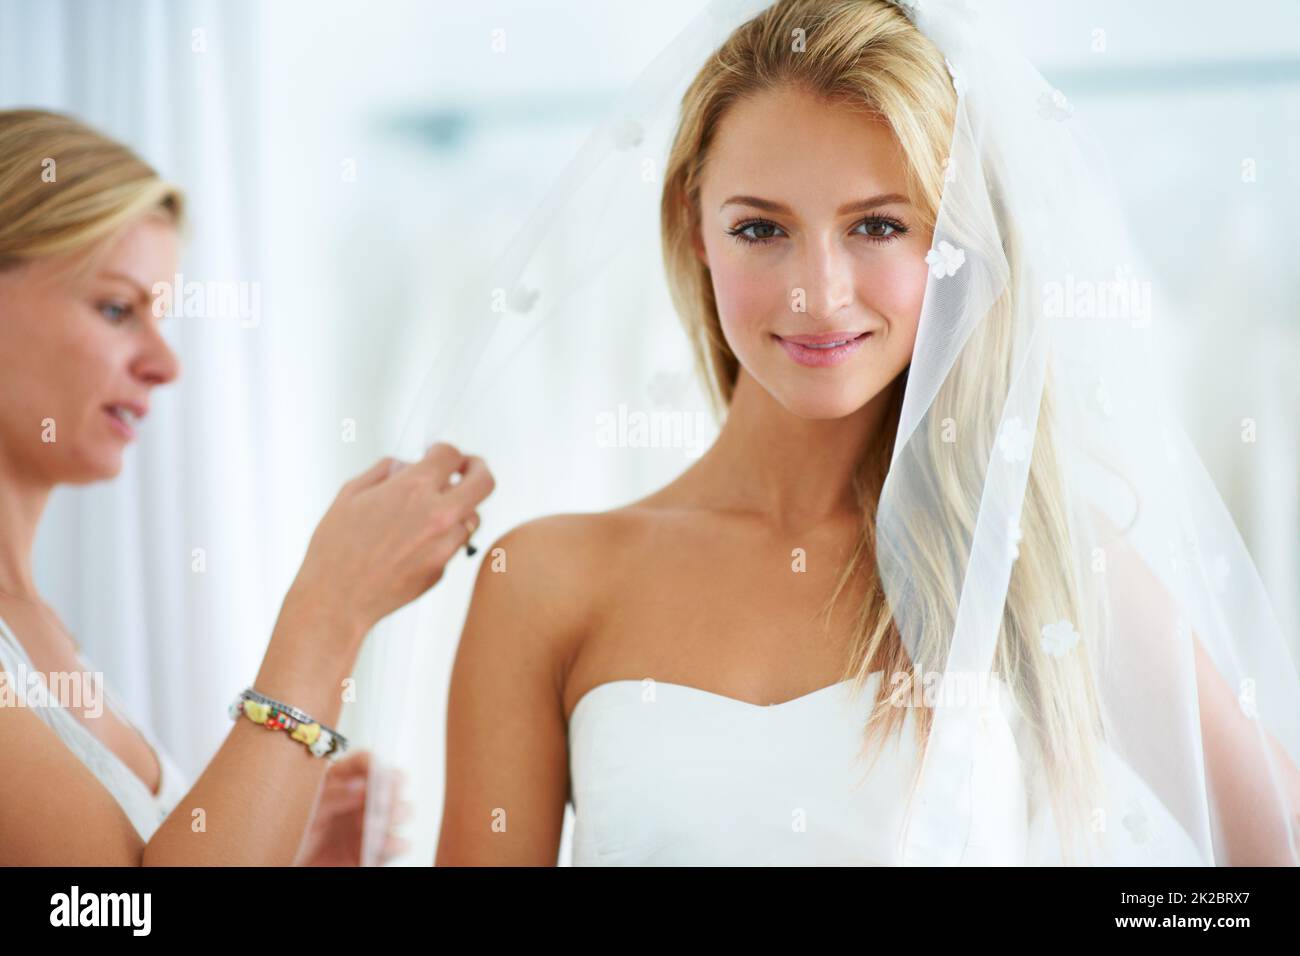 Mettendo sui ritocchi finali. Una giovane donna che cerca abiti da sposa in una boutique nuziale. Foto Stock